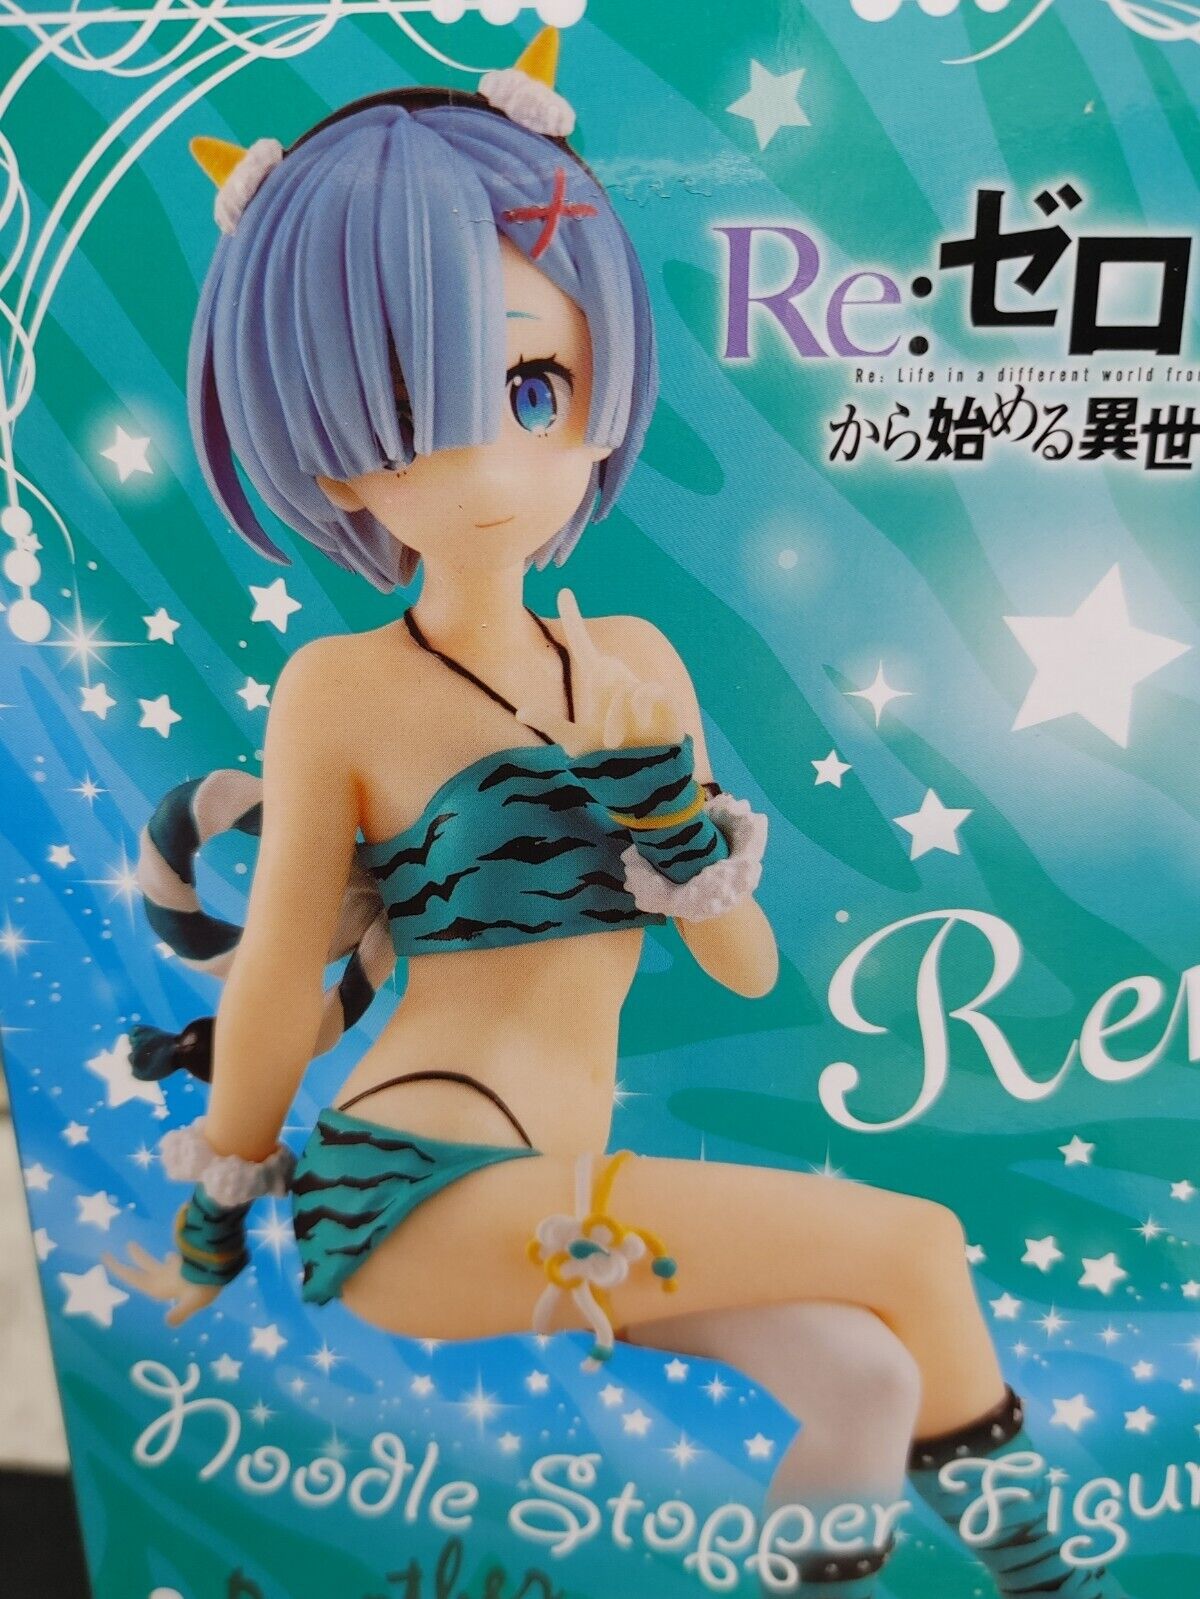 Anime Figure Sexy Noodle Stopper Figure Demon  Another color Re:Zero Rem Japan